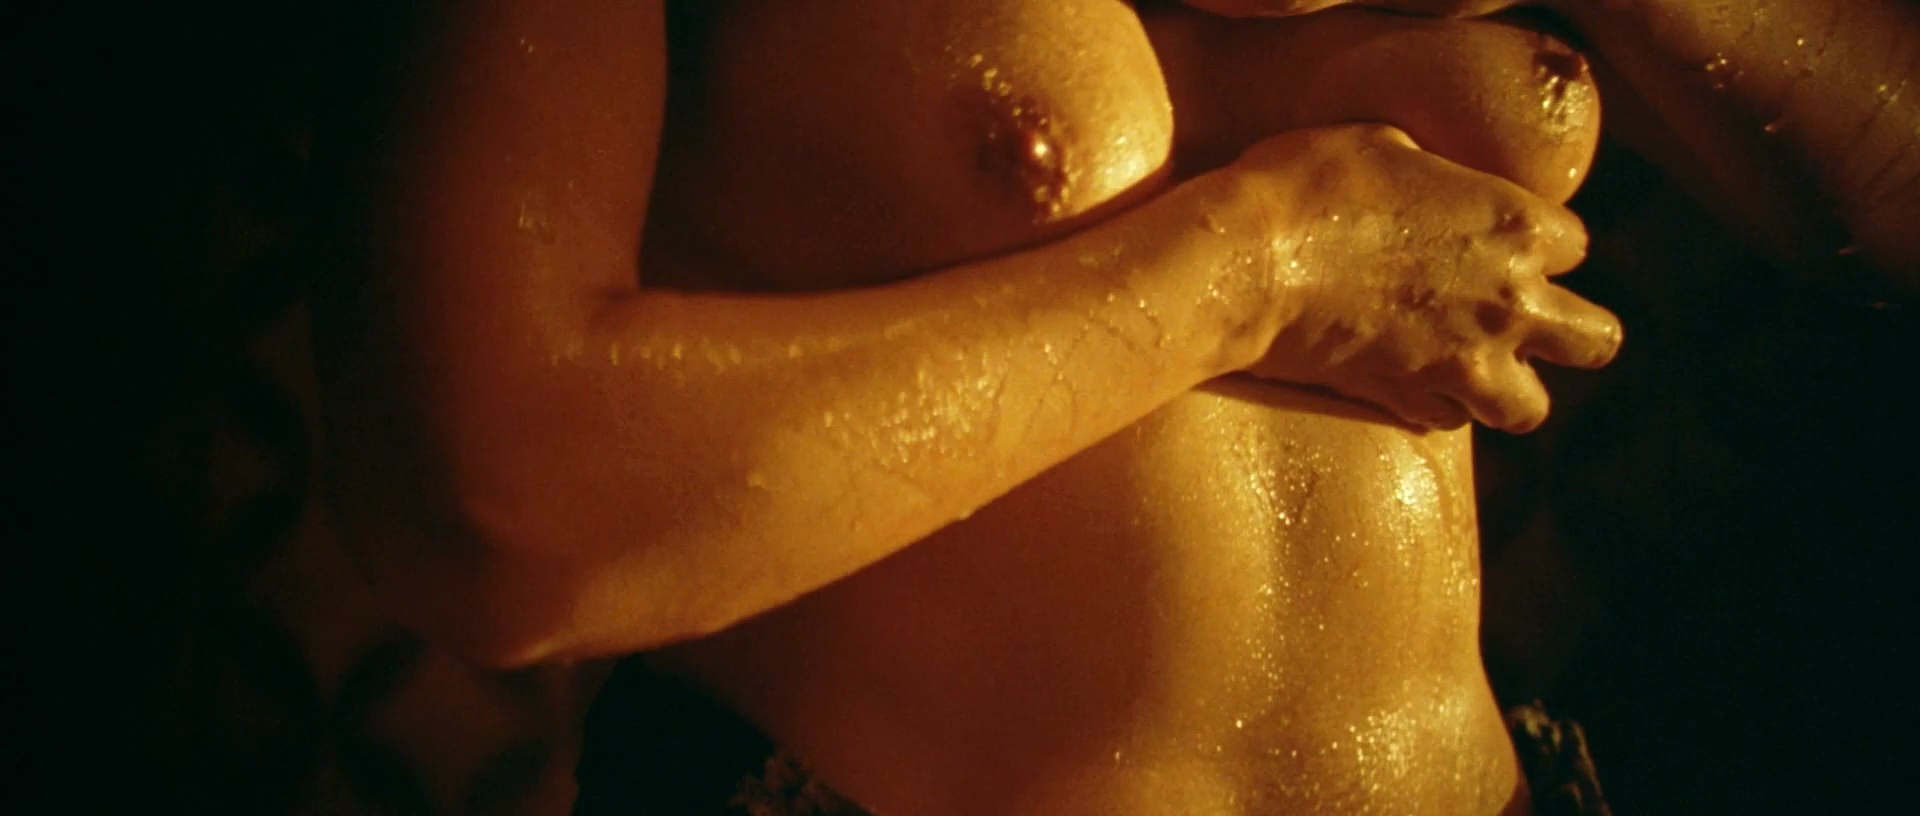 Моника Беллуччи nude pics.